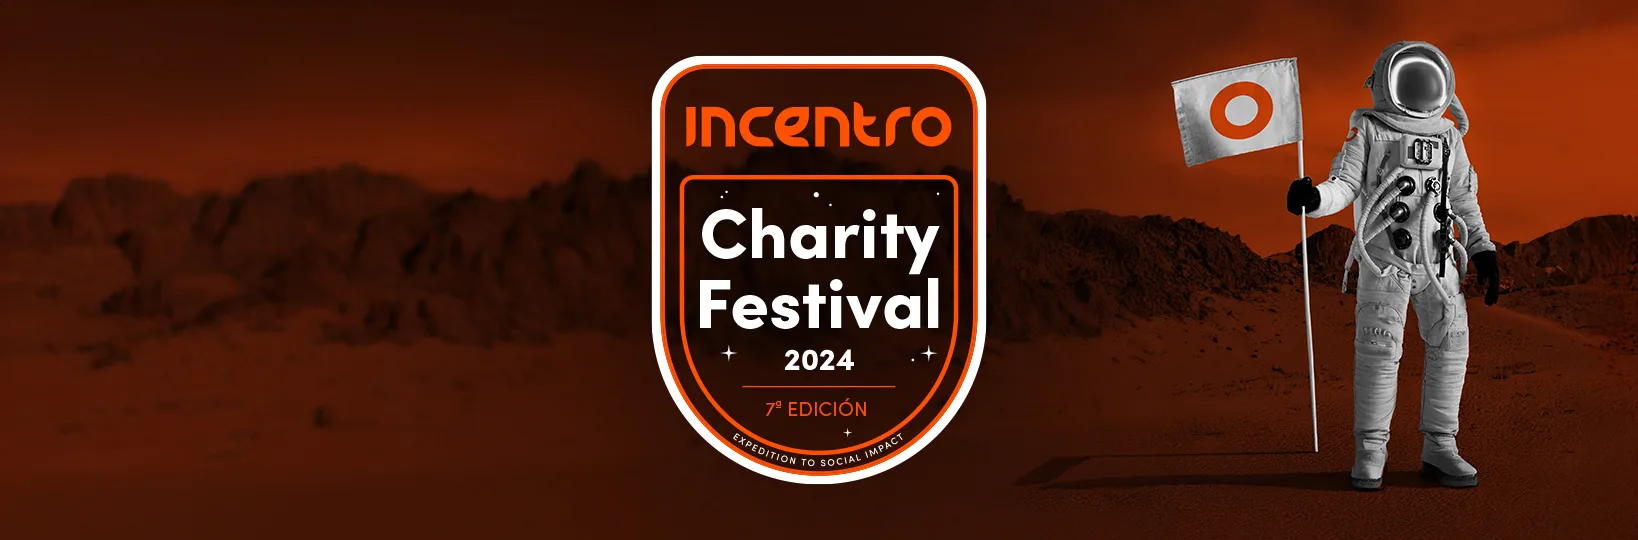 Incentro celebra la séptima edición de su festival más solidario: Incentro Charity Festival 